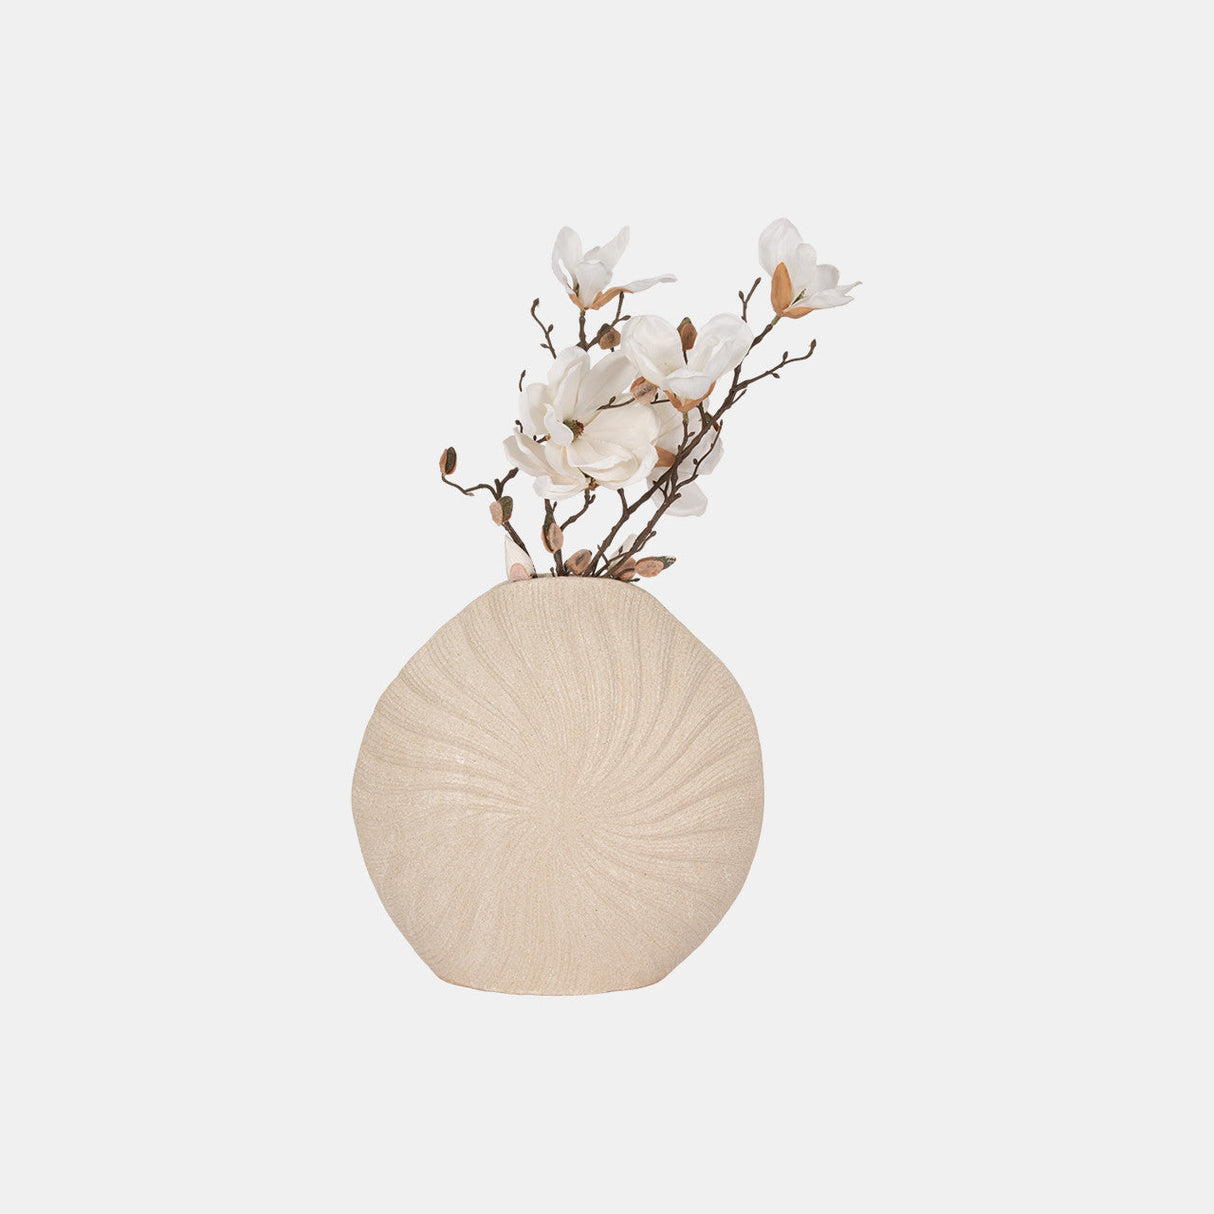 15" White Sand Shell Vase, White